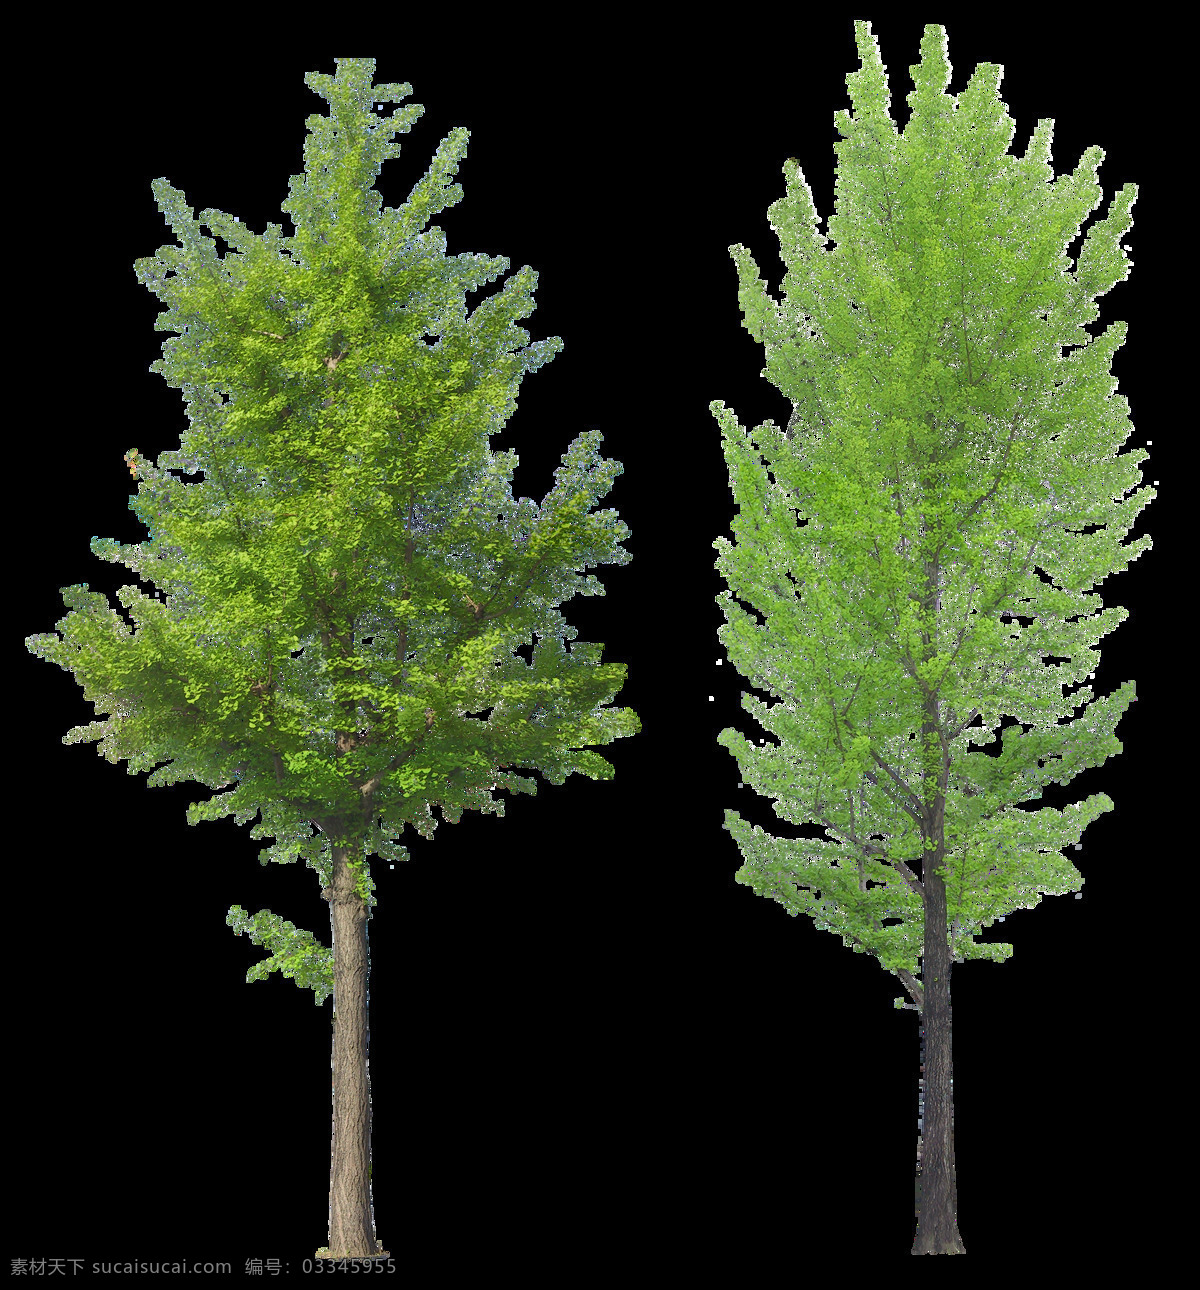 两 棵 高大 大树 免 抠 透明 图 层 景观植物 植物图片 设计素材 树木背景 林木 植树节 透明图 植物 树叶 园林 树木 景观 植物素材 树木树叶 绿色素材 绿树